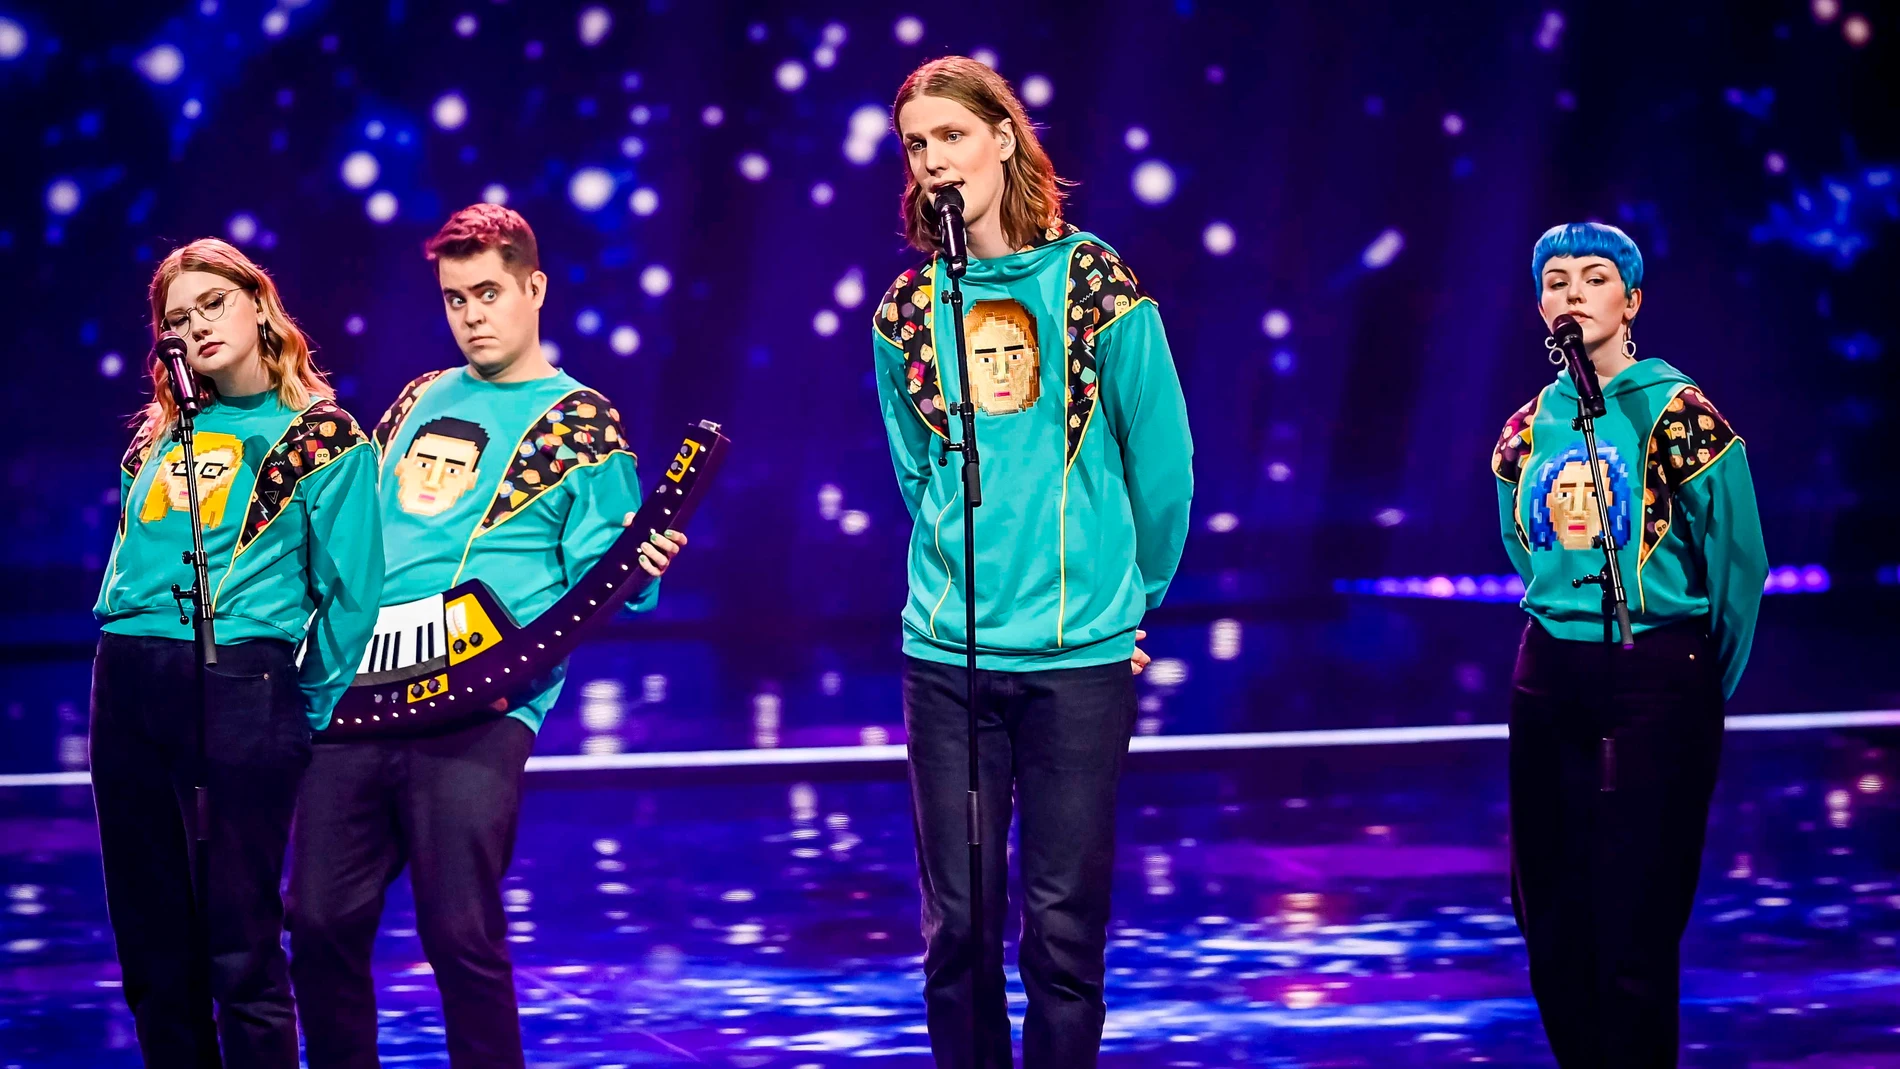 Eurovisión 2021: dos positivos entre los artistas y últimas noticias de hoy